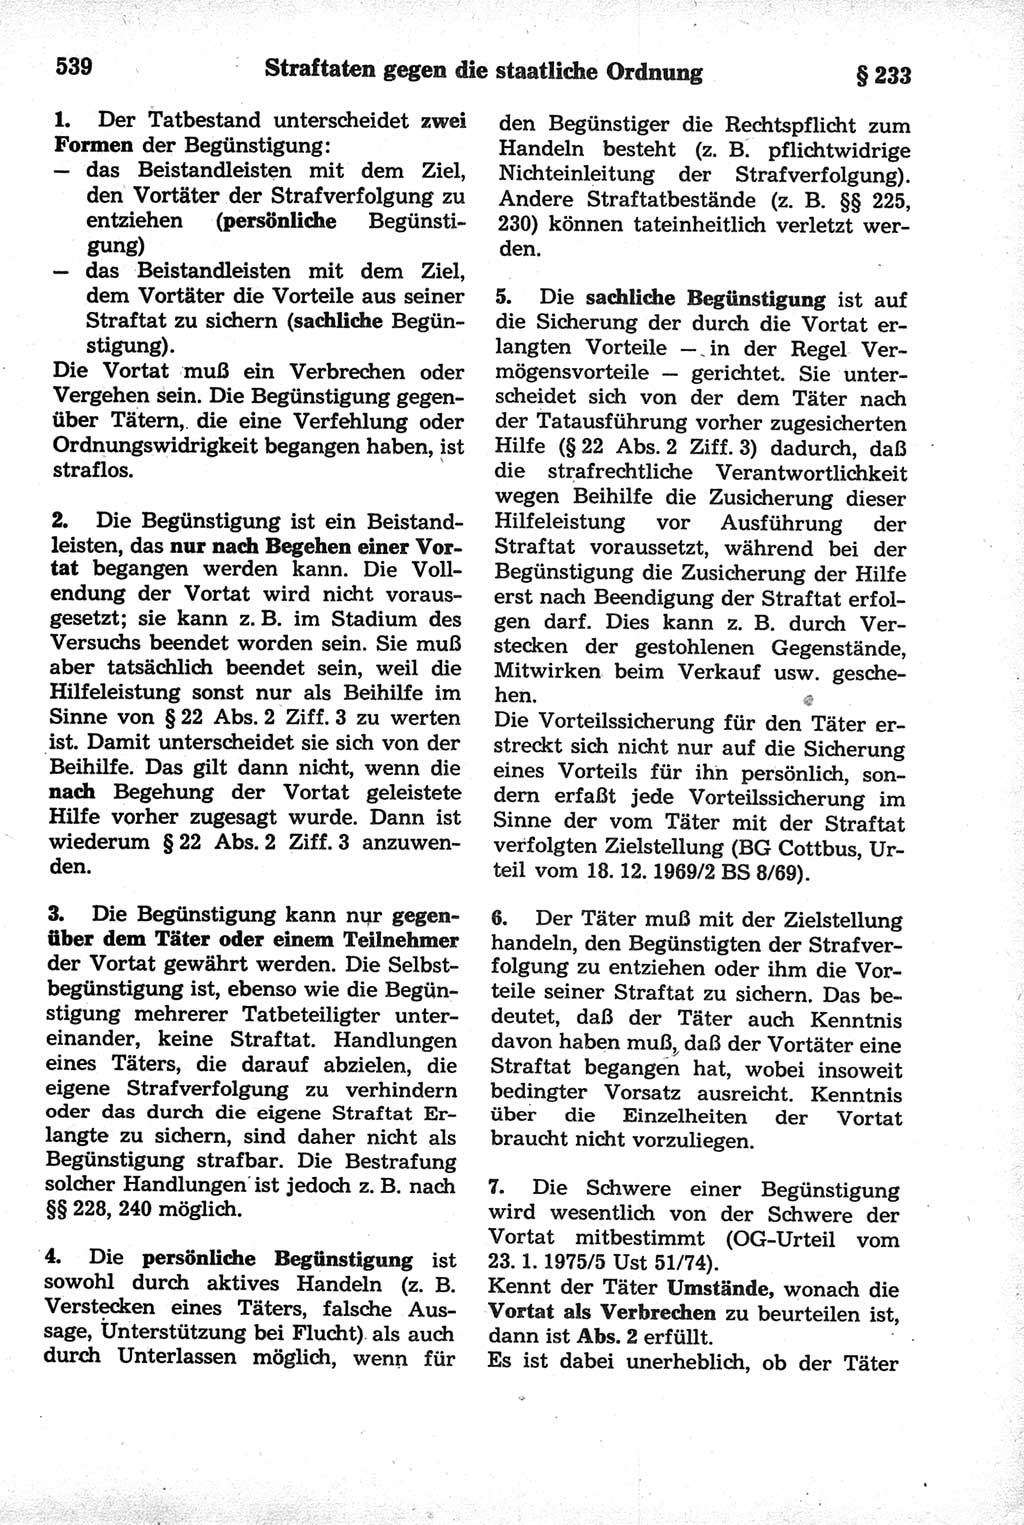 Strafrecht der Deutschen Demokratischen Republik (DDR), Kommentar zum Strafgesetzbuch (StGB) 1981, Seite 539 (Strafr. DDR Komm. StGB 1981, S. 539)